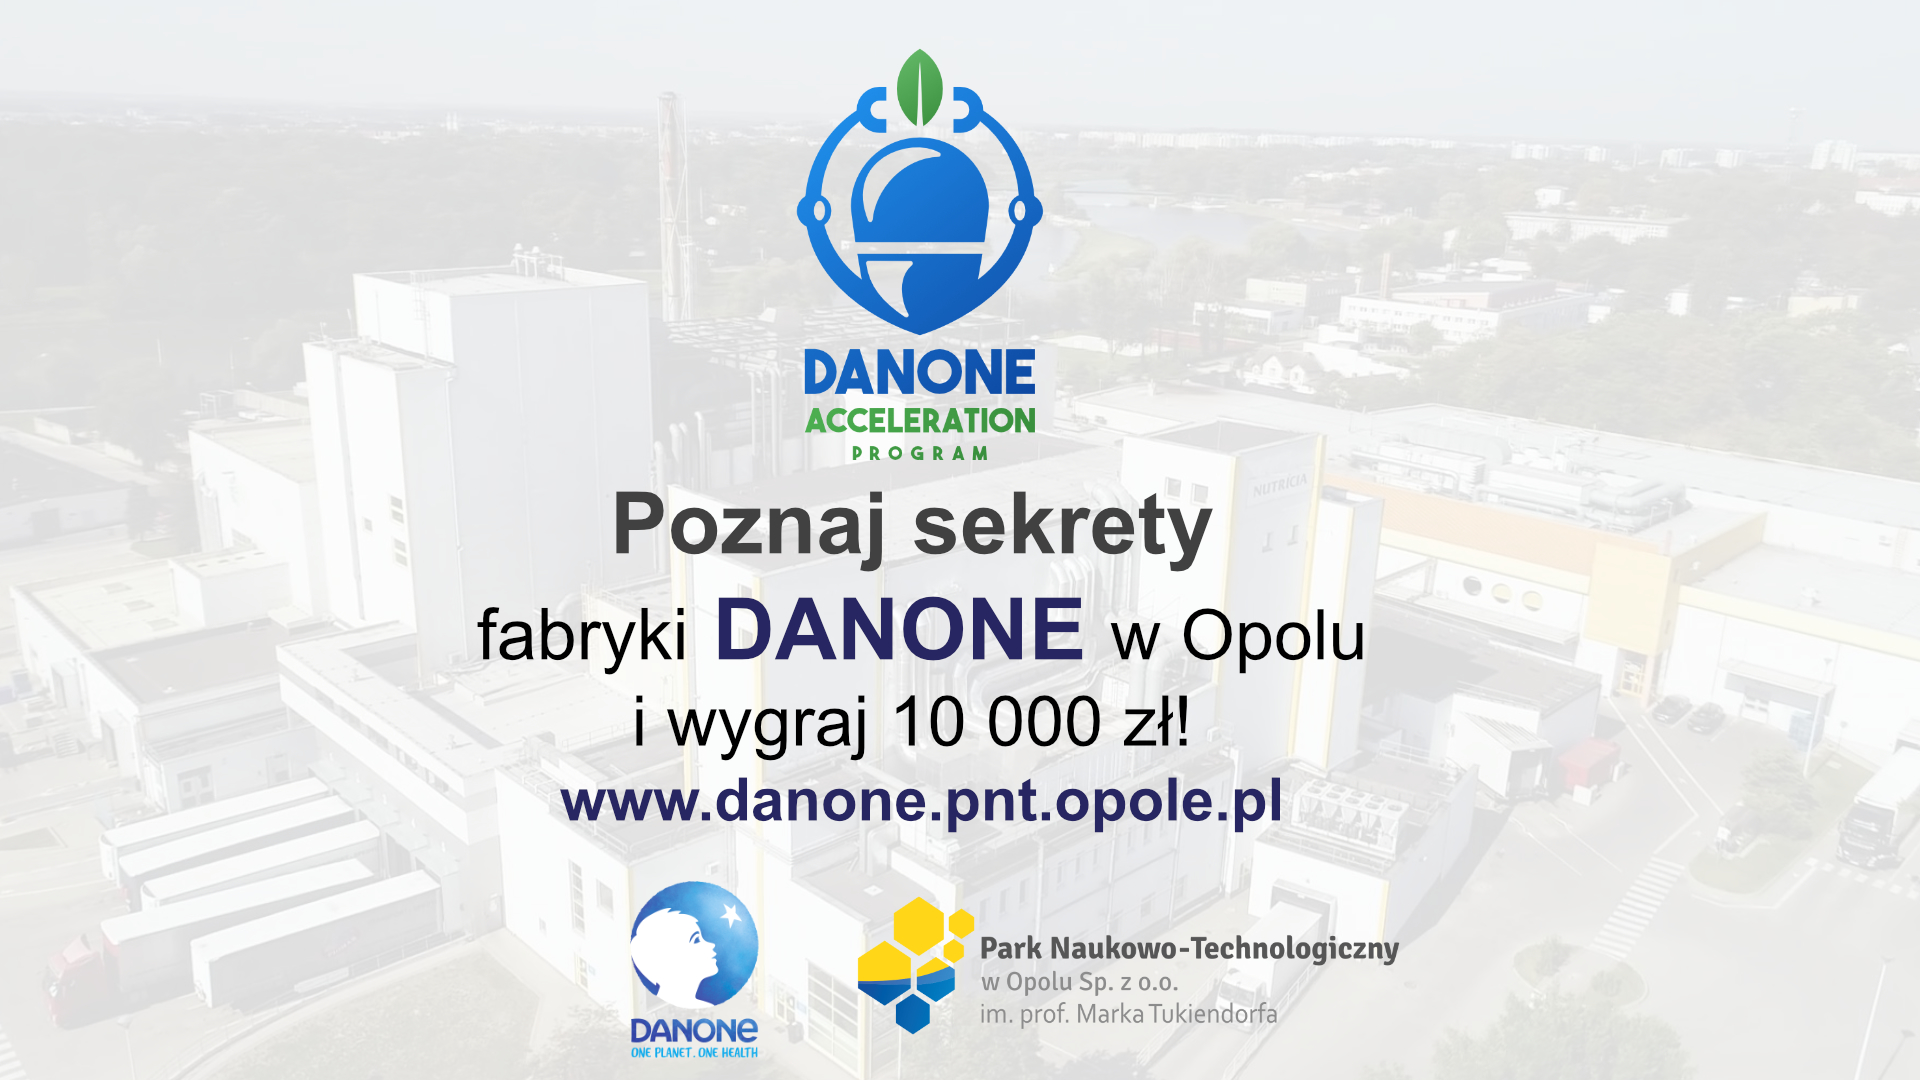 10 000 zł dla najlepszego pomysłu z obszaru automatyzacji i ochrony środowiska w fabryce Danone